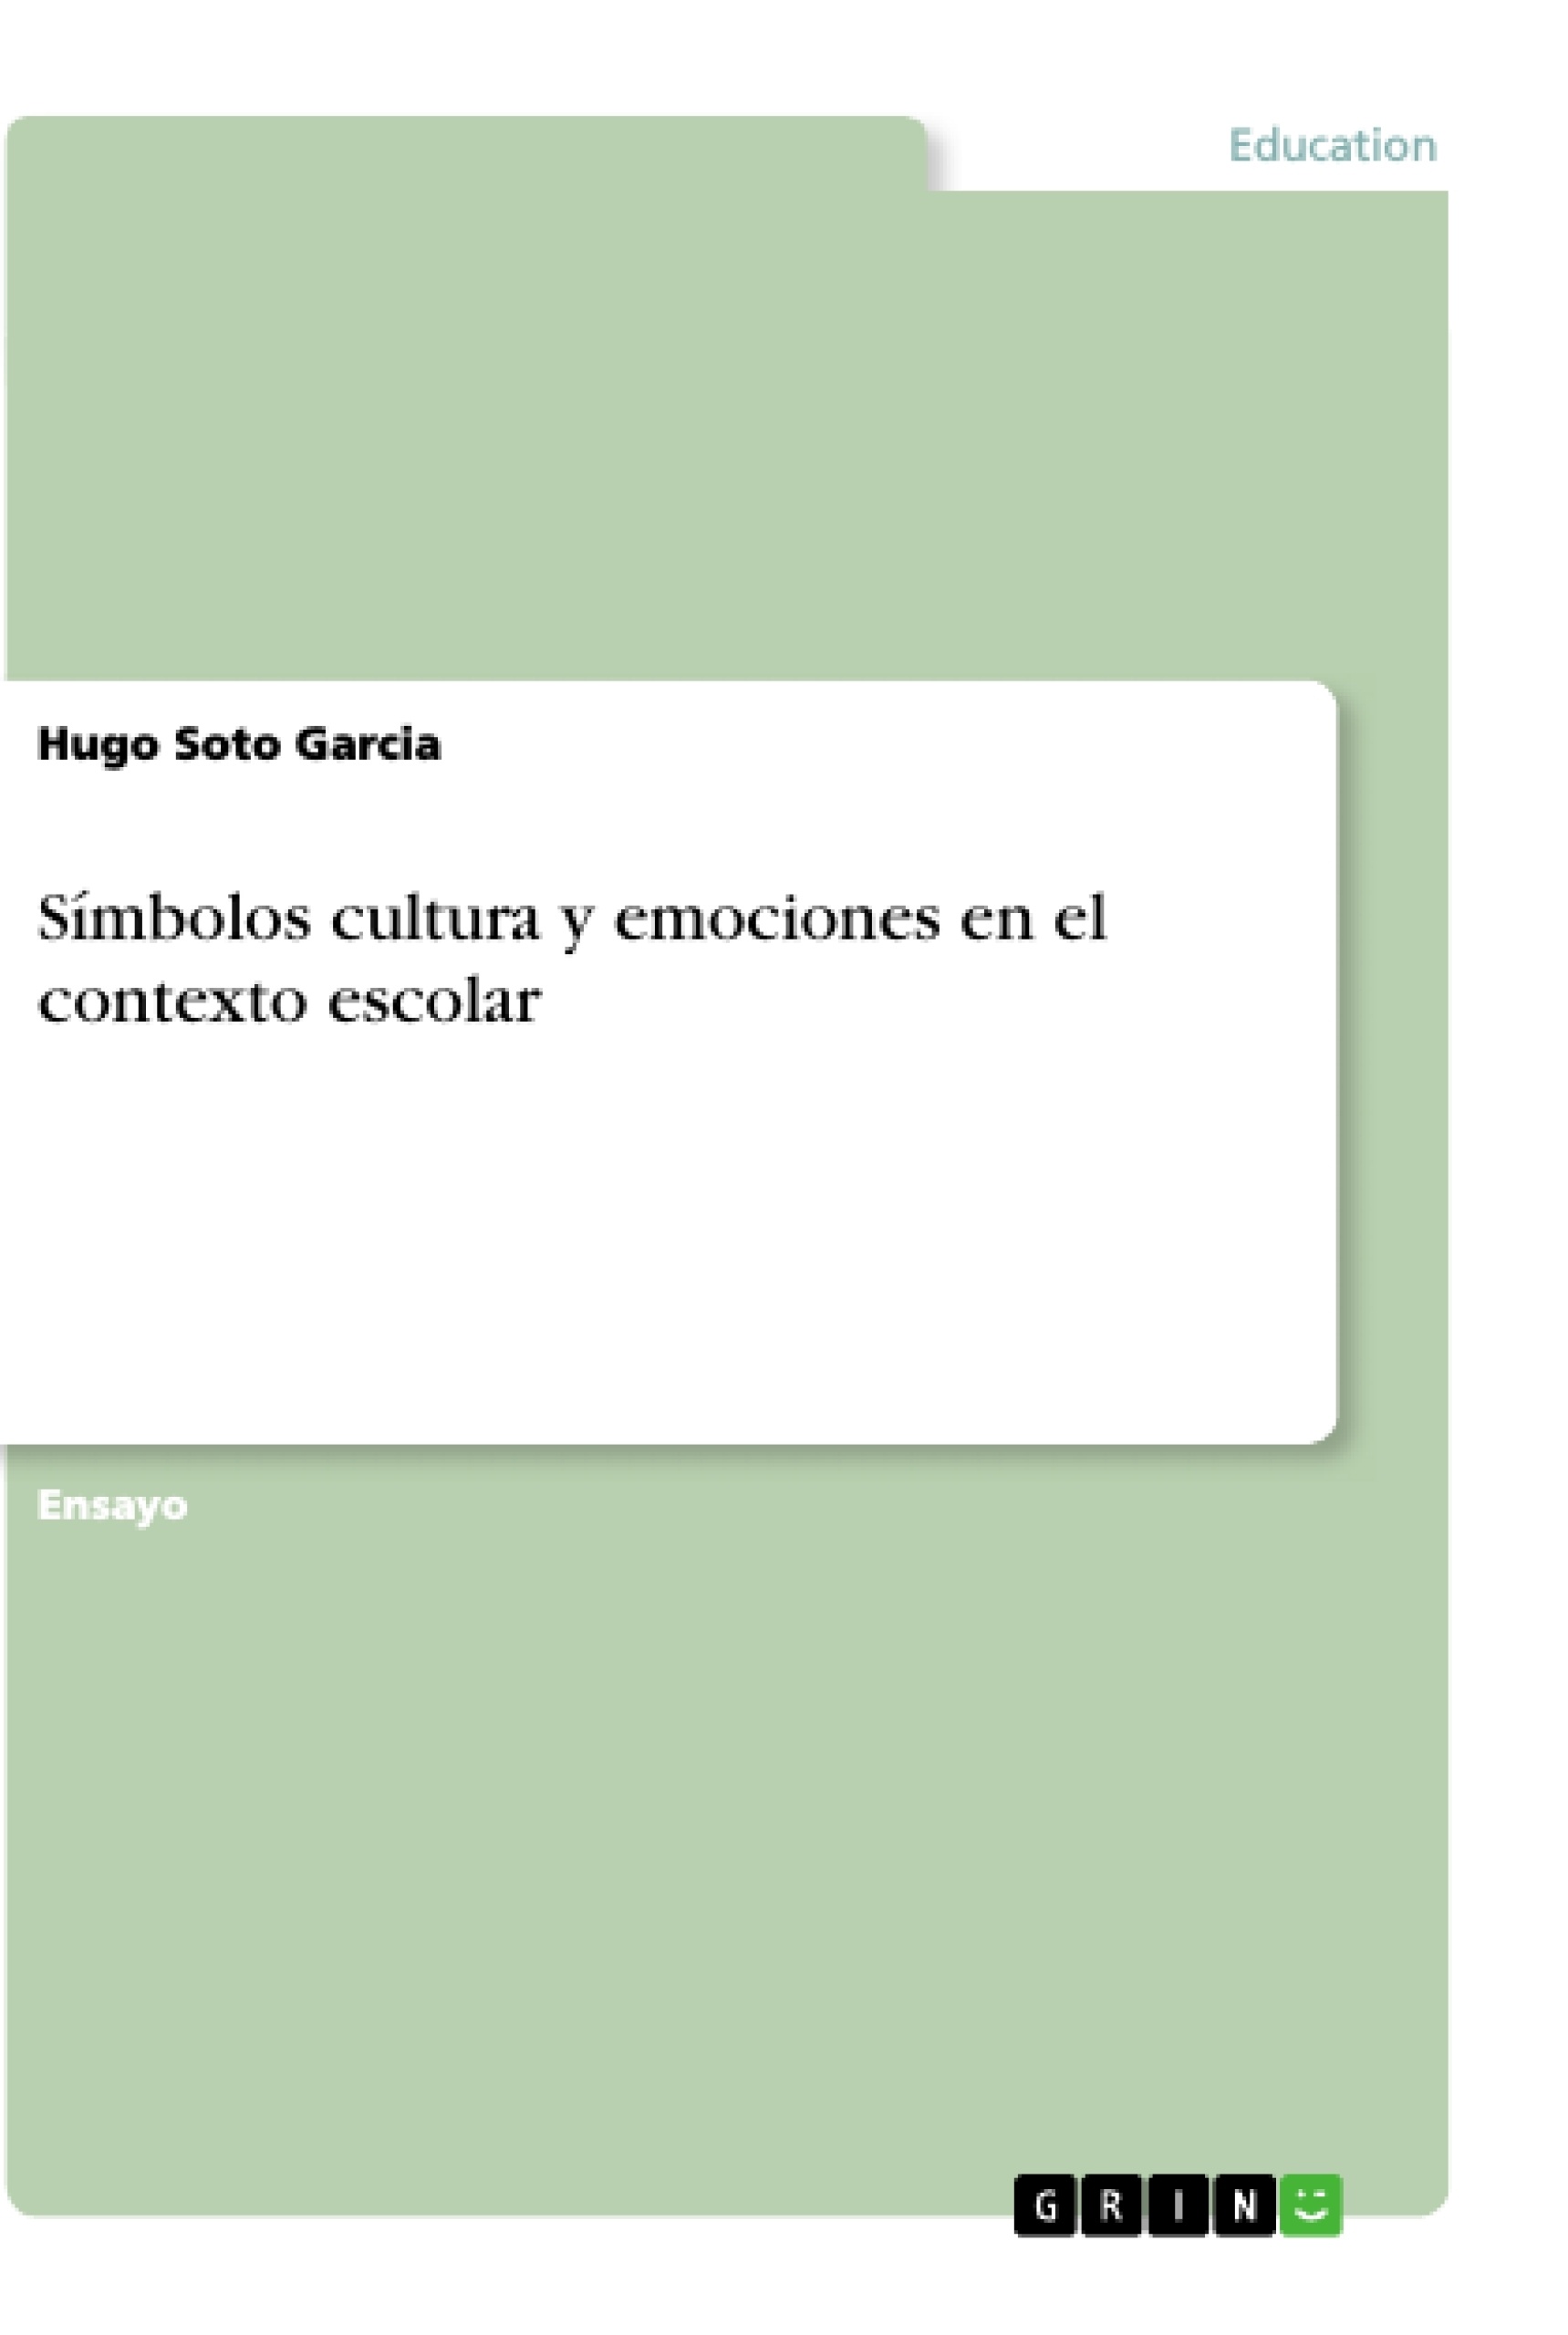 Titre: Símbolos cultura y emociones en el contexto escolar